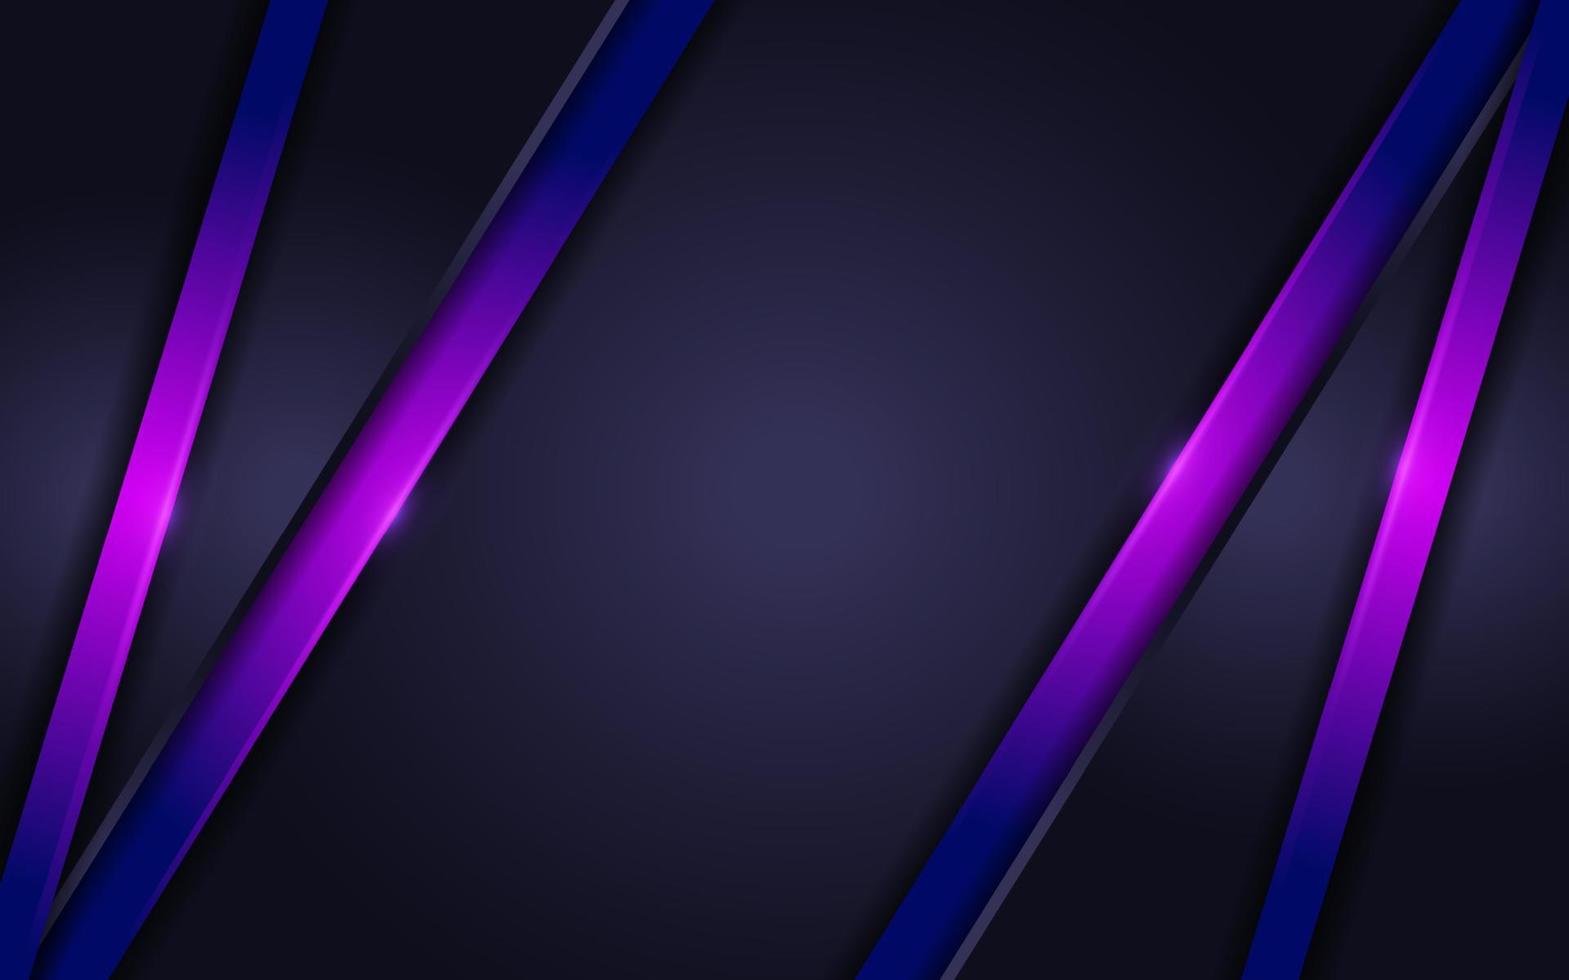 futurista moderno en capa púrpura con fondo azul marino oscuro vector